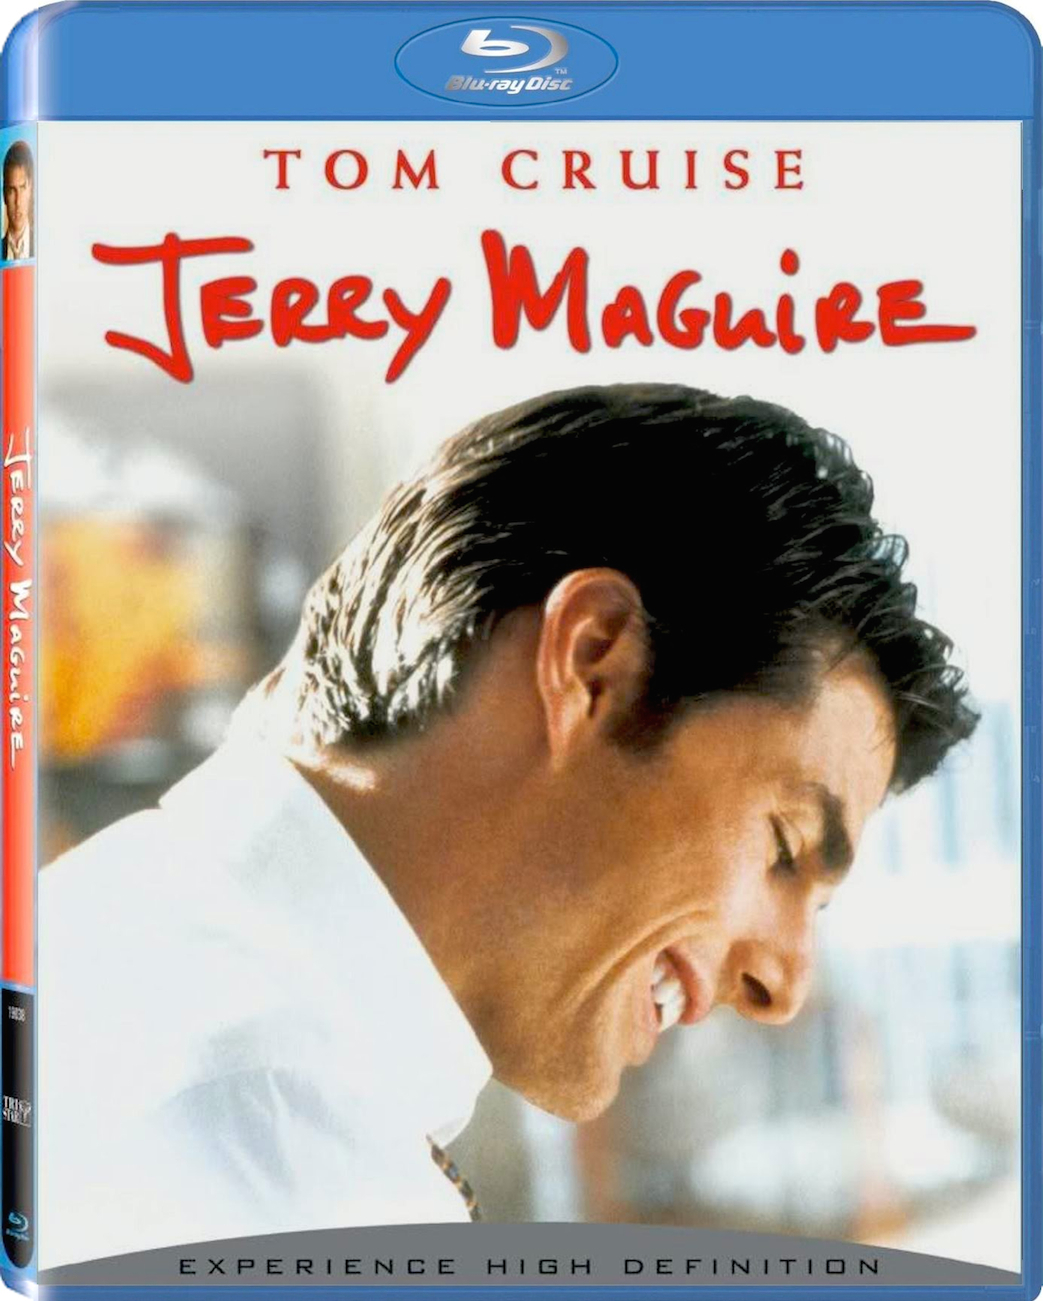 Jerry Maguire (1996) Jerry Maguire: Seducción y Desafío (1996) [AC3 5.1 + SUP] [Blu Ray-Rip] [GOOGLEDRIVE*] 350_front